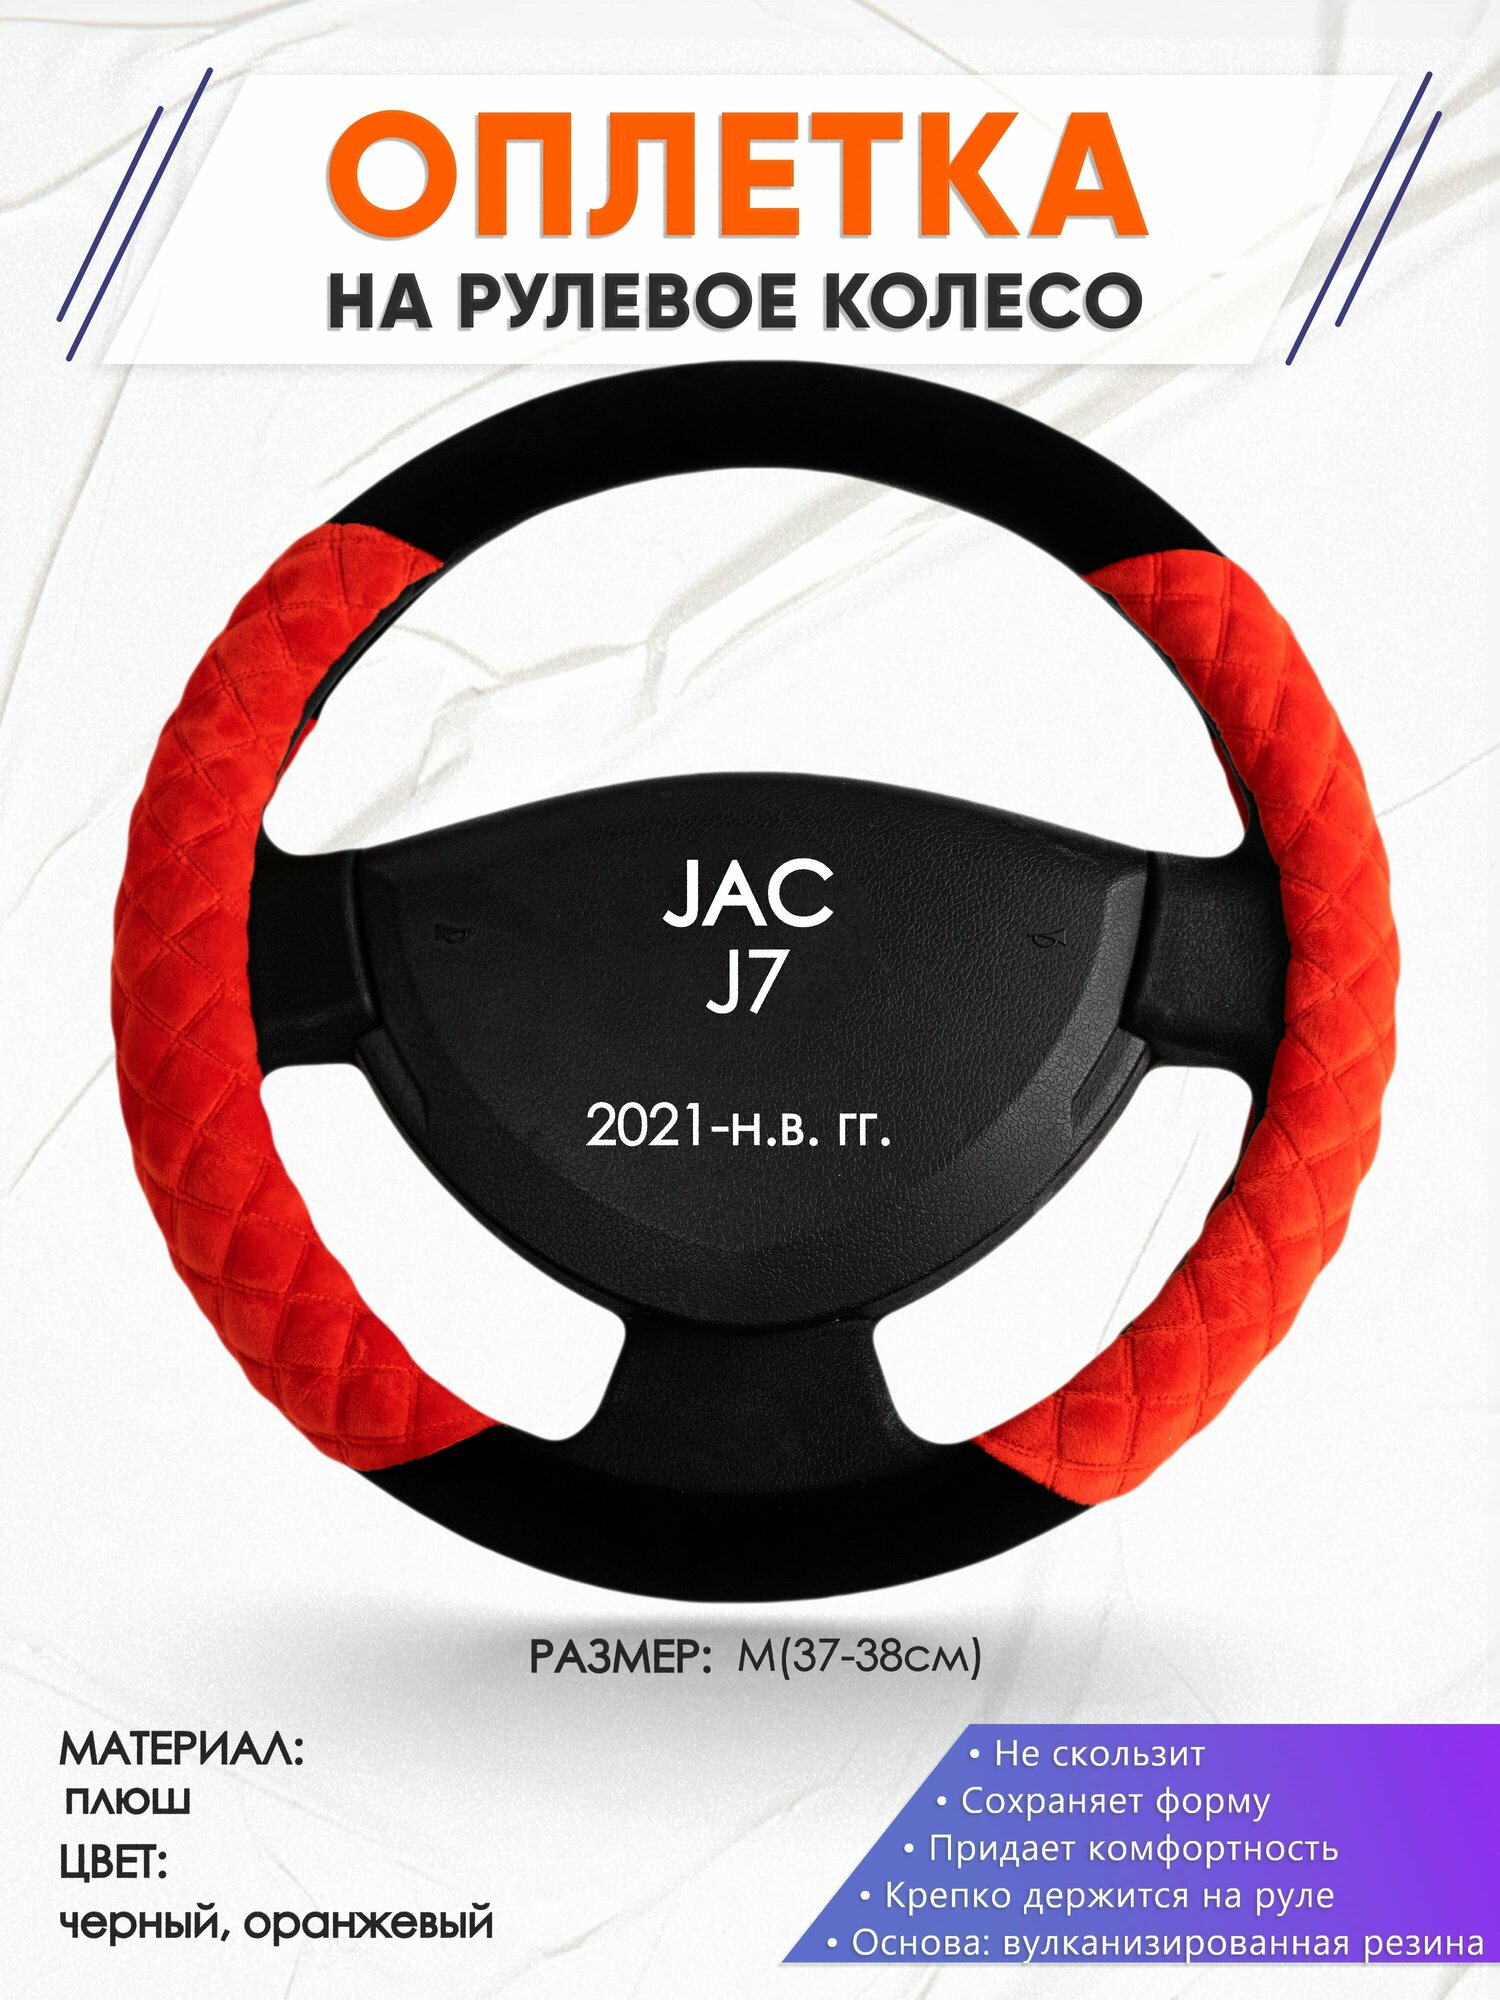 Оплетка наруль для JAC J7(Джак Джи 7) 2021-н. в. годов выпуска, размер M(37-38см), Замша 37